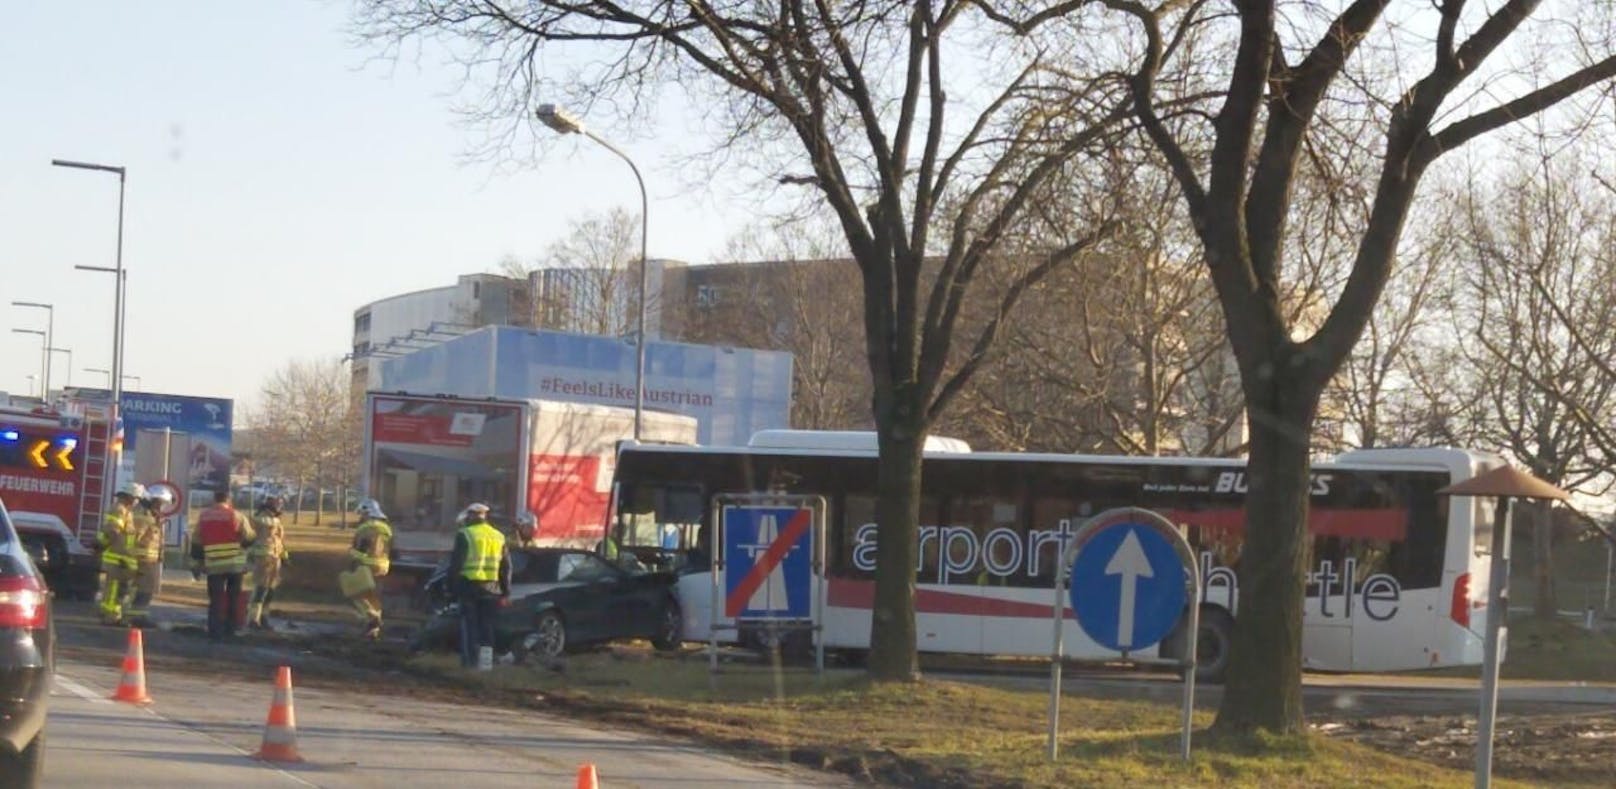 Schwerer Unfall bei der Abfahrt zum Flughafen Wien!